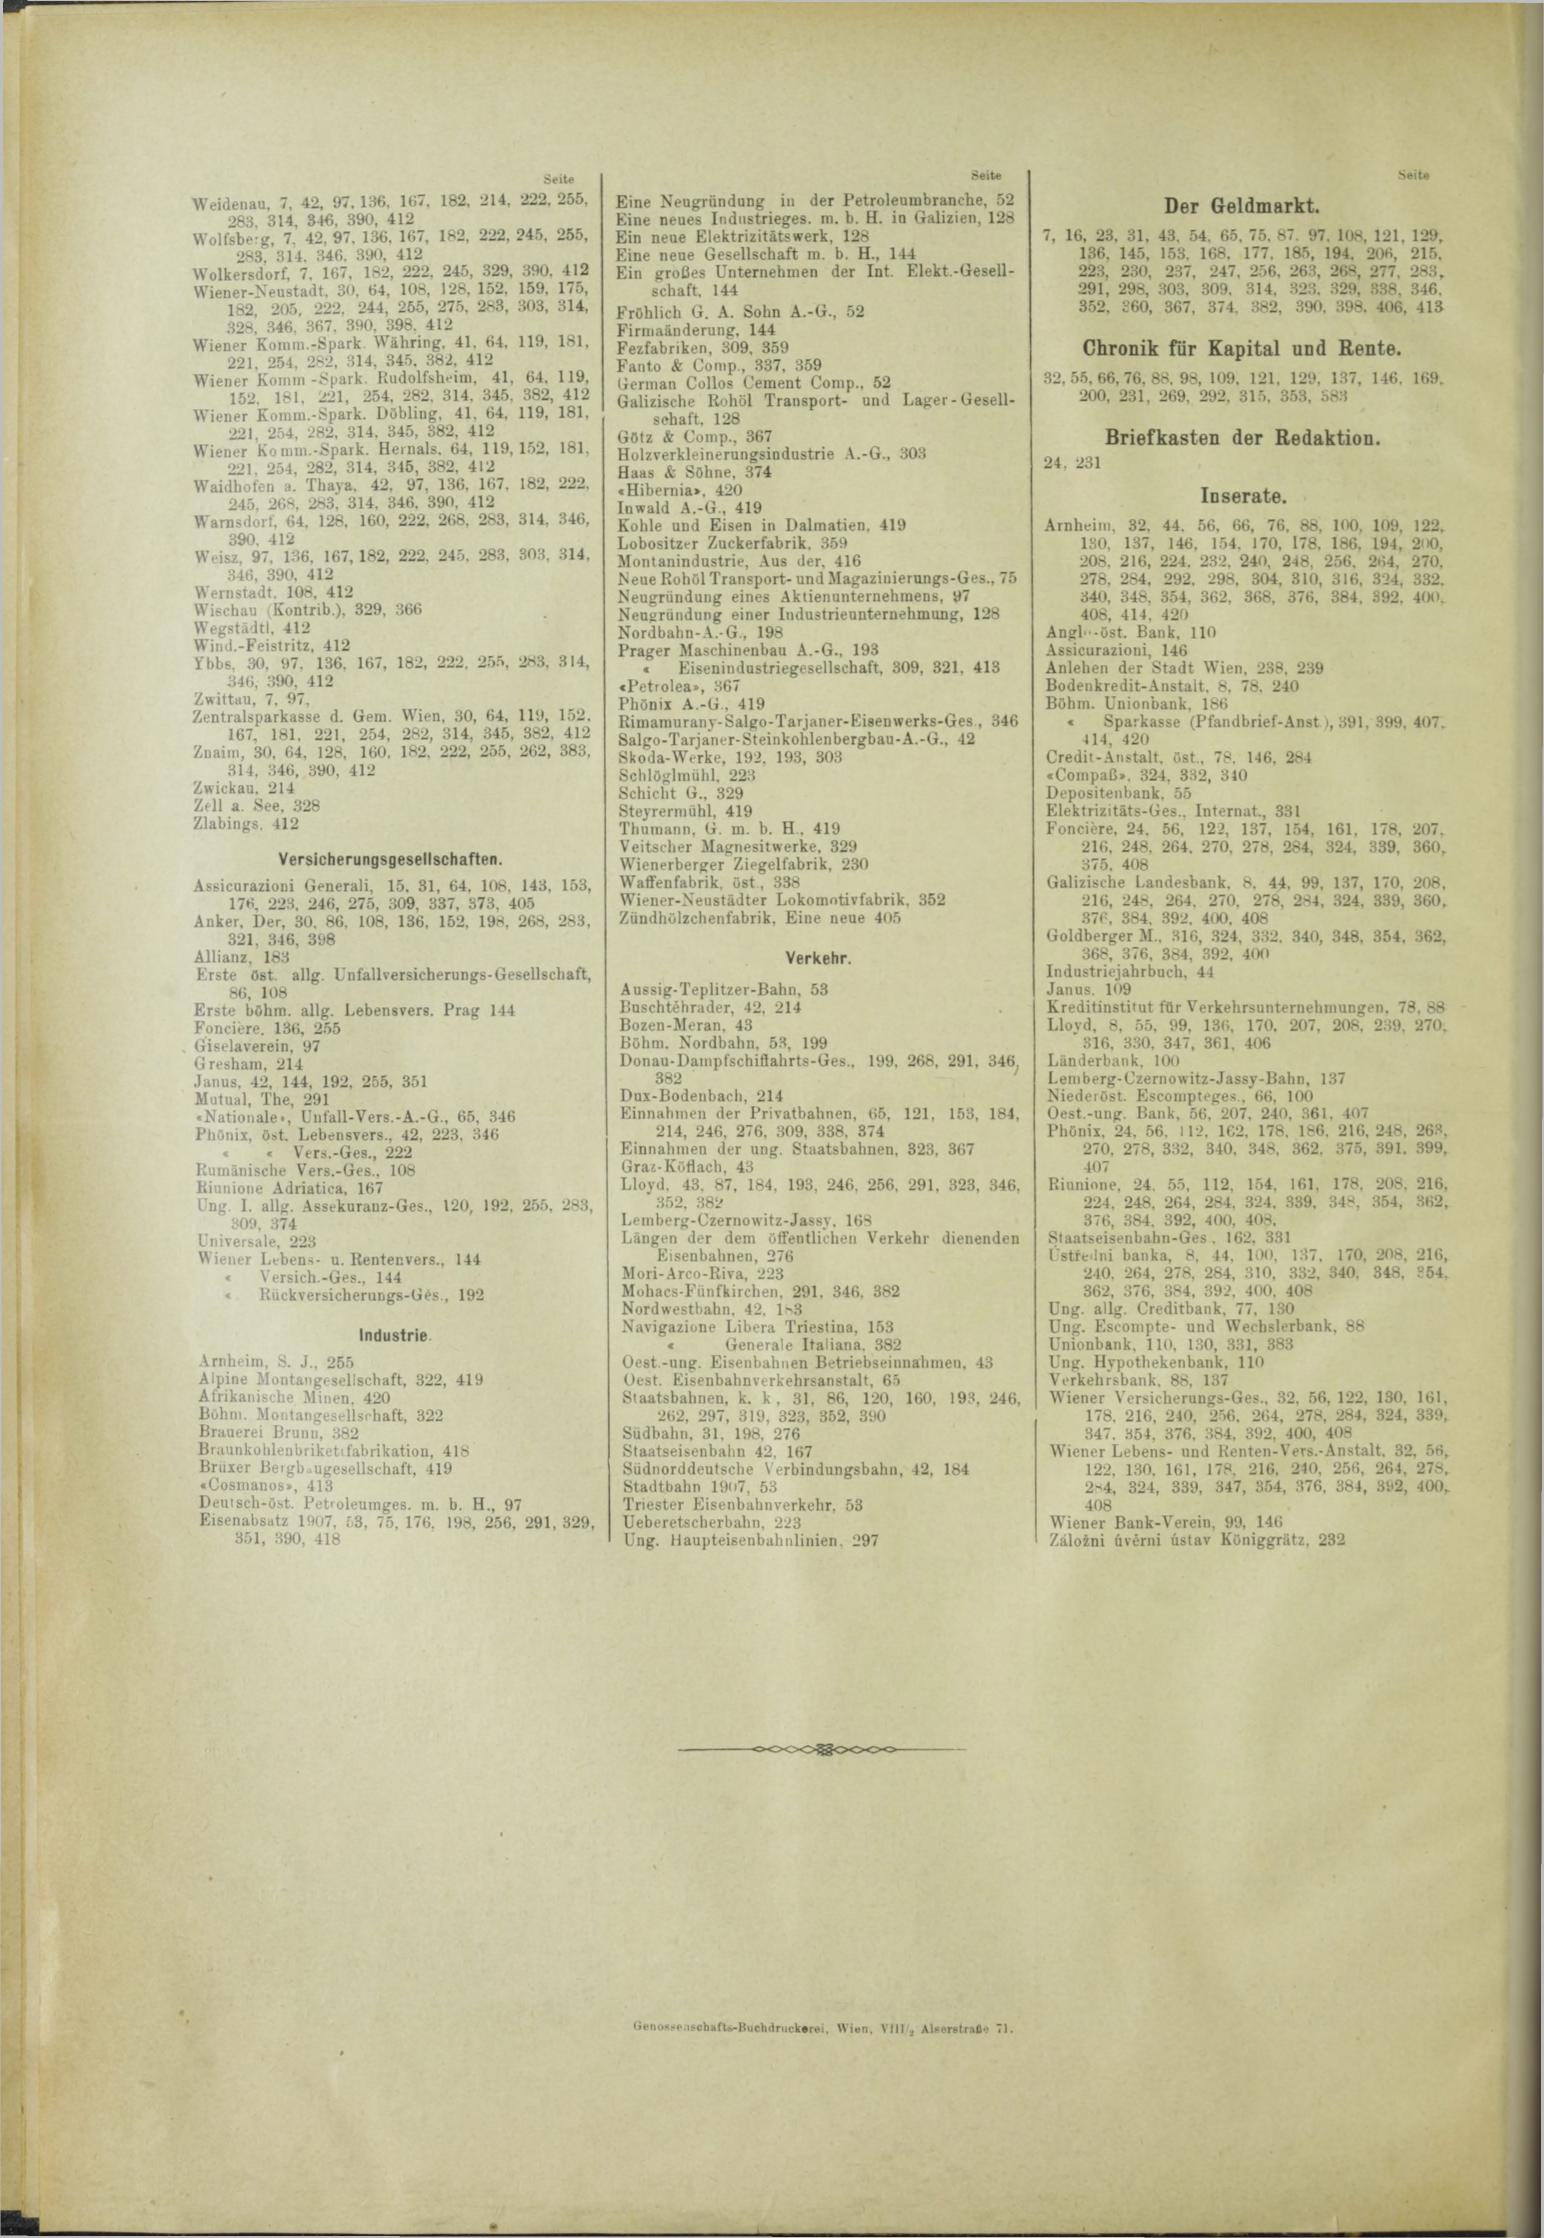 Der Tresor 28.11.1908 - Seite 12